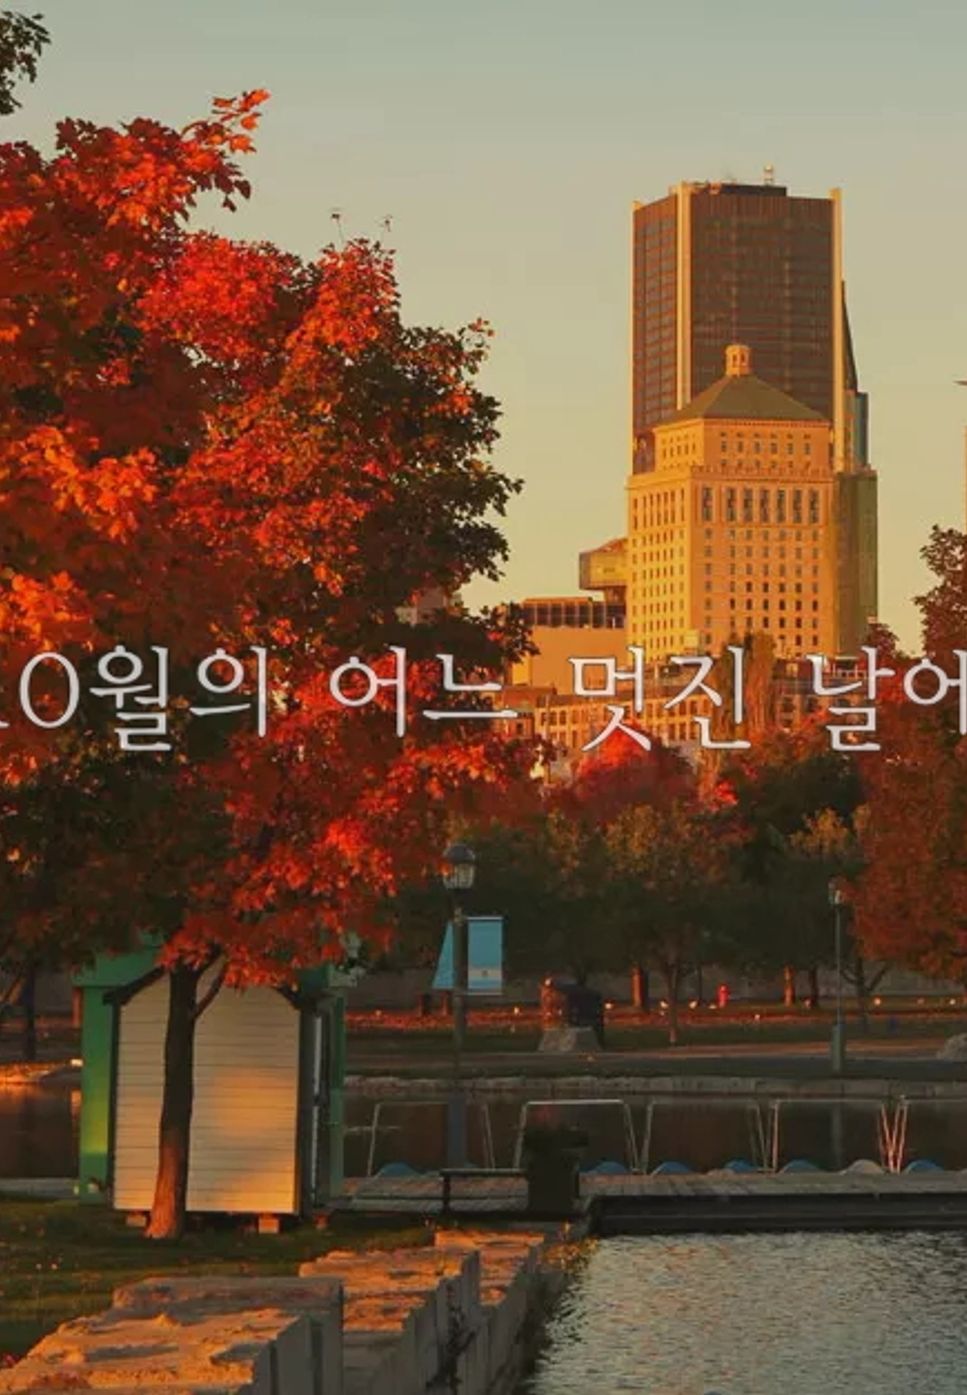 Kim Dongkyu (김동규) - 10월의 어느 멋진 날에 by Piano Hug